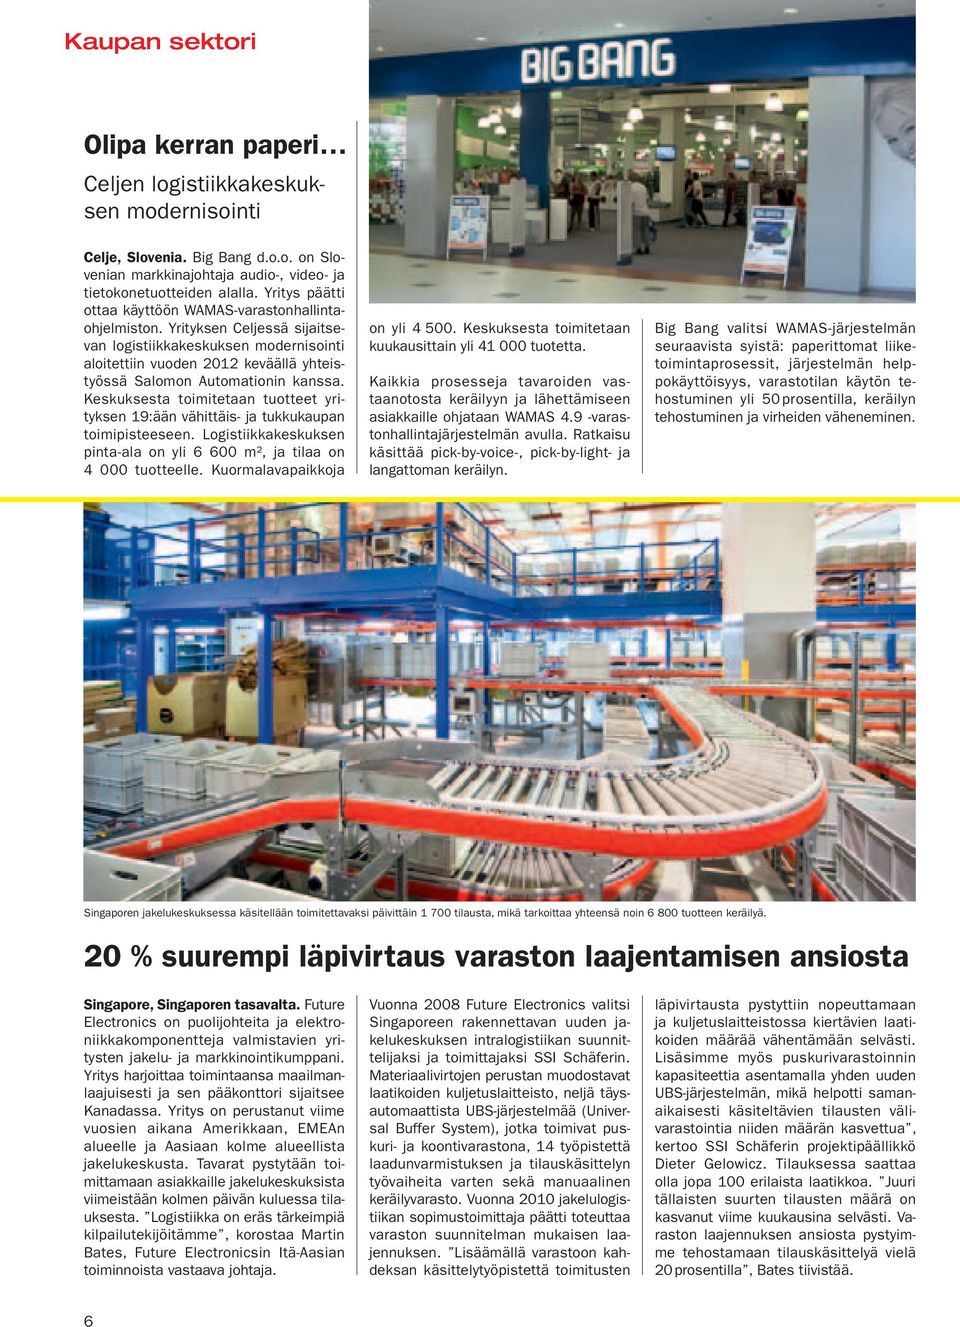 Yrityksen Celjessä sijaitsevan logistiikkakeskuksen modernisointi aloitettiin vuoden 2012 keväällä yhteistyössä Salomon Automationin kanssa.